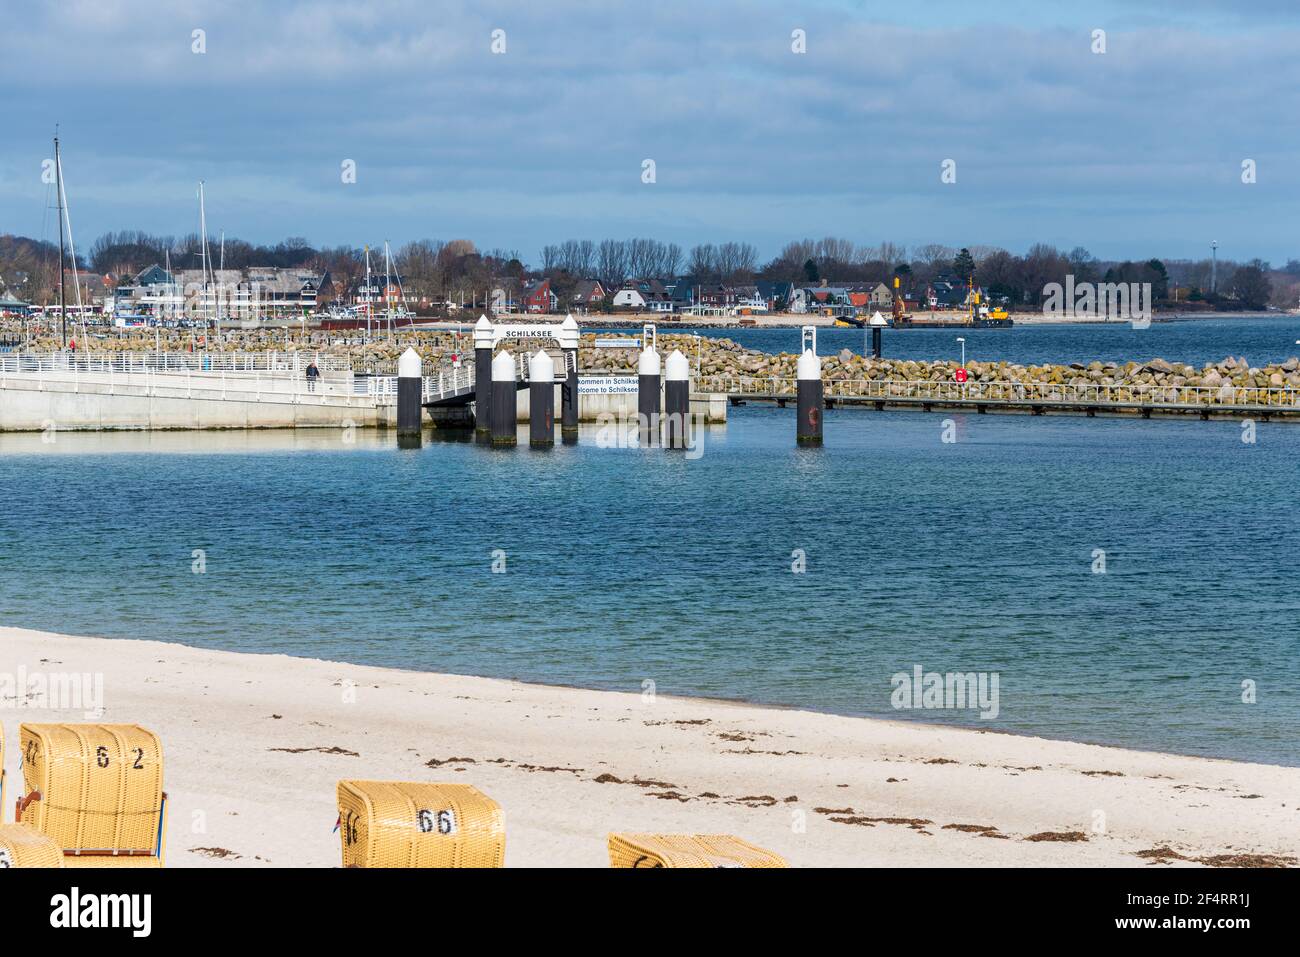 Kurz vor Ostern am Strand in Kiel-Schilksee, Strandkörbe werden für die bevorstehende Saison aufgebaut Stock Photo